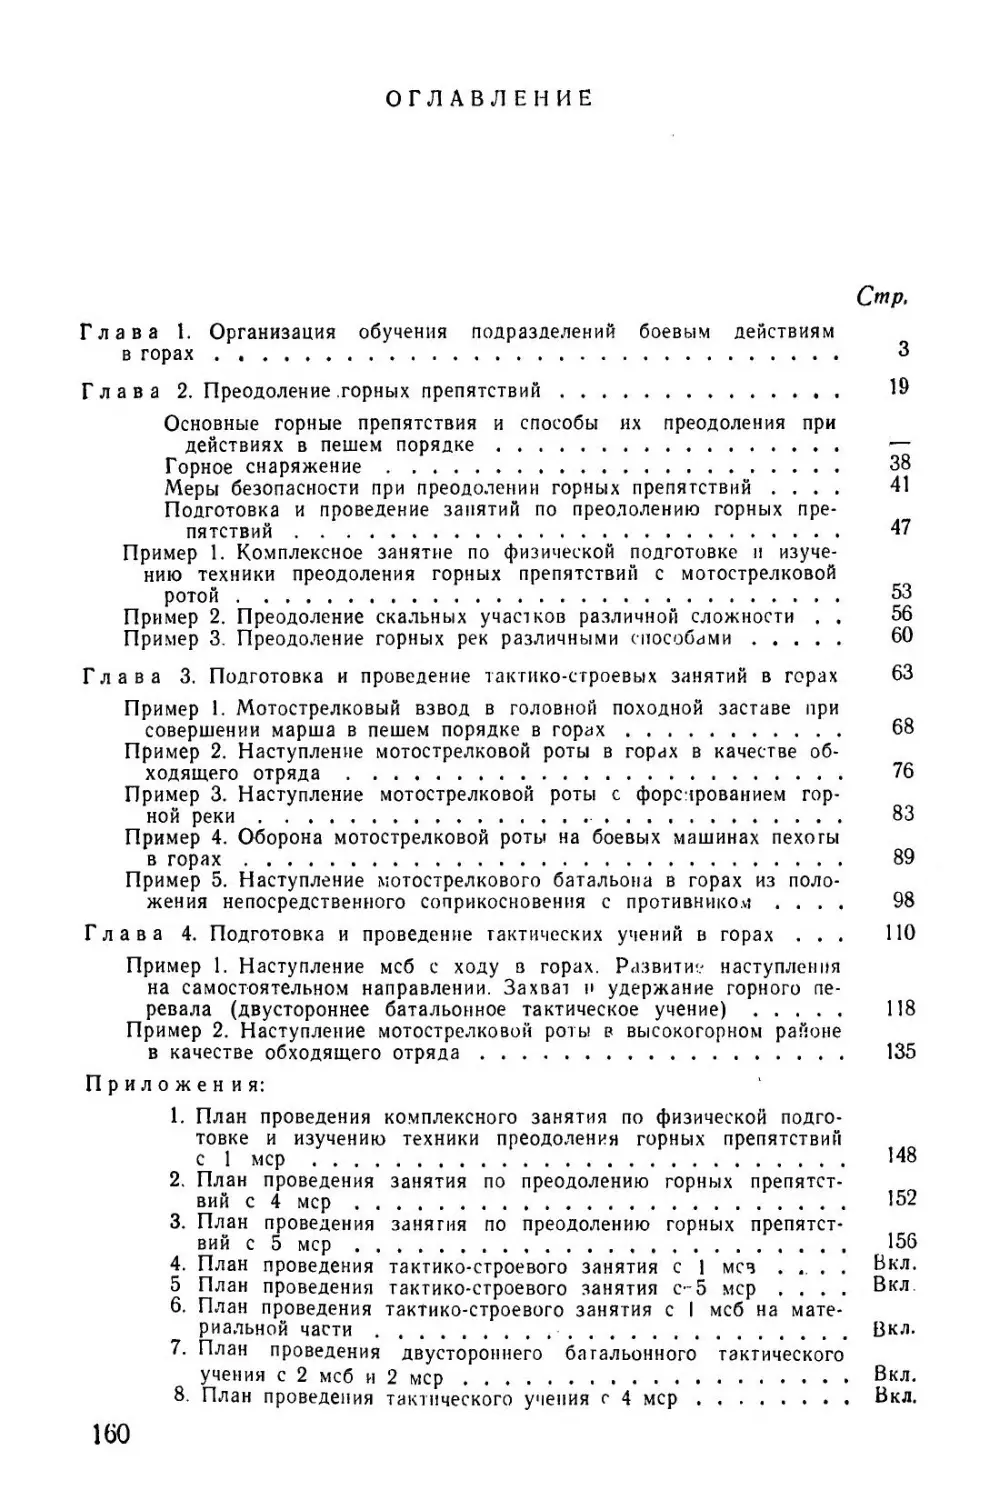 Методическое пособие Обучение мотострелковых подразделений боевым действиям в горах (1979)_161